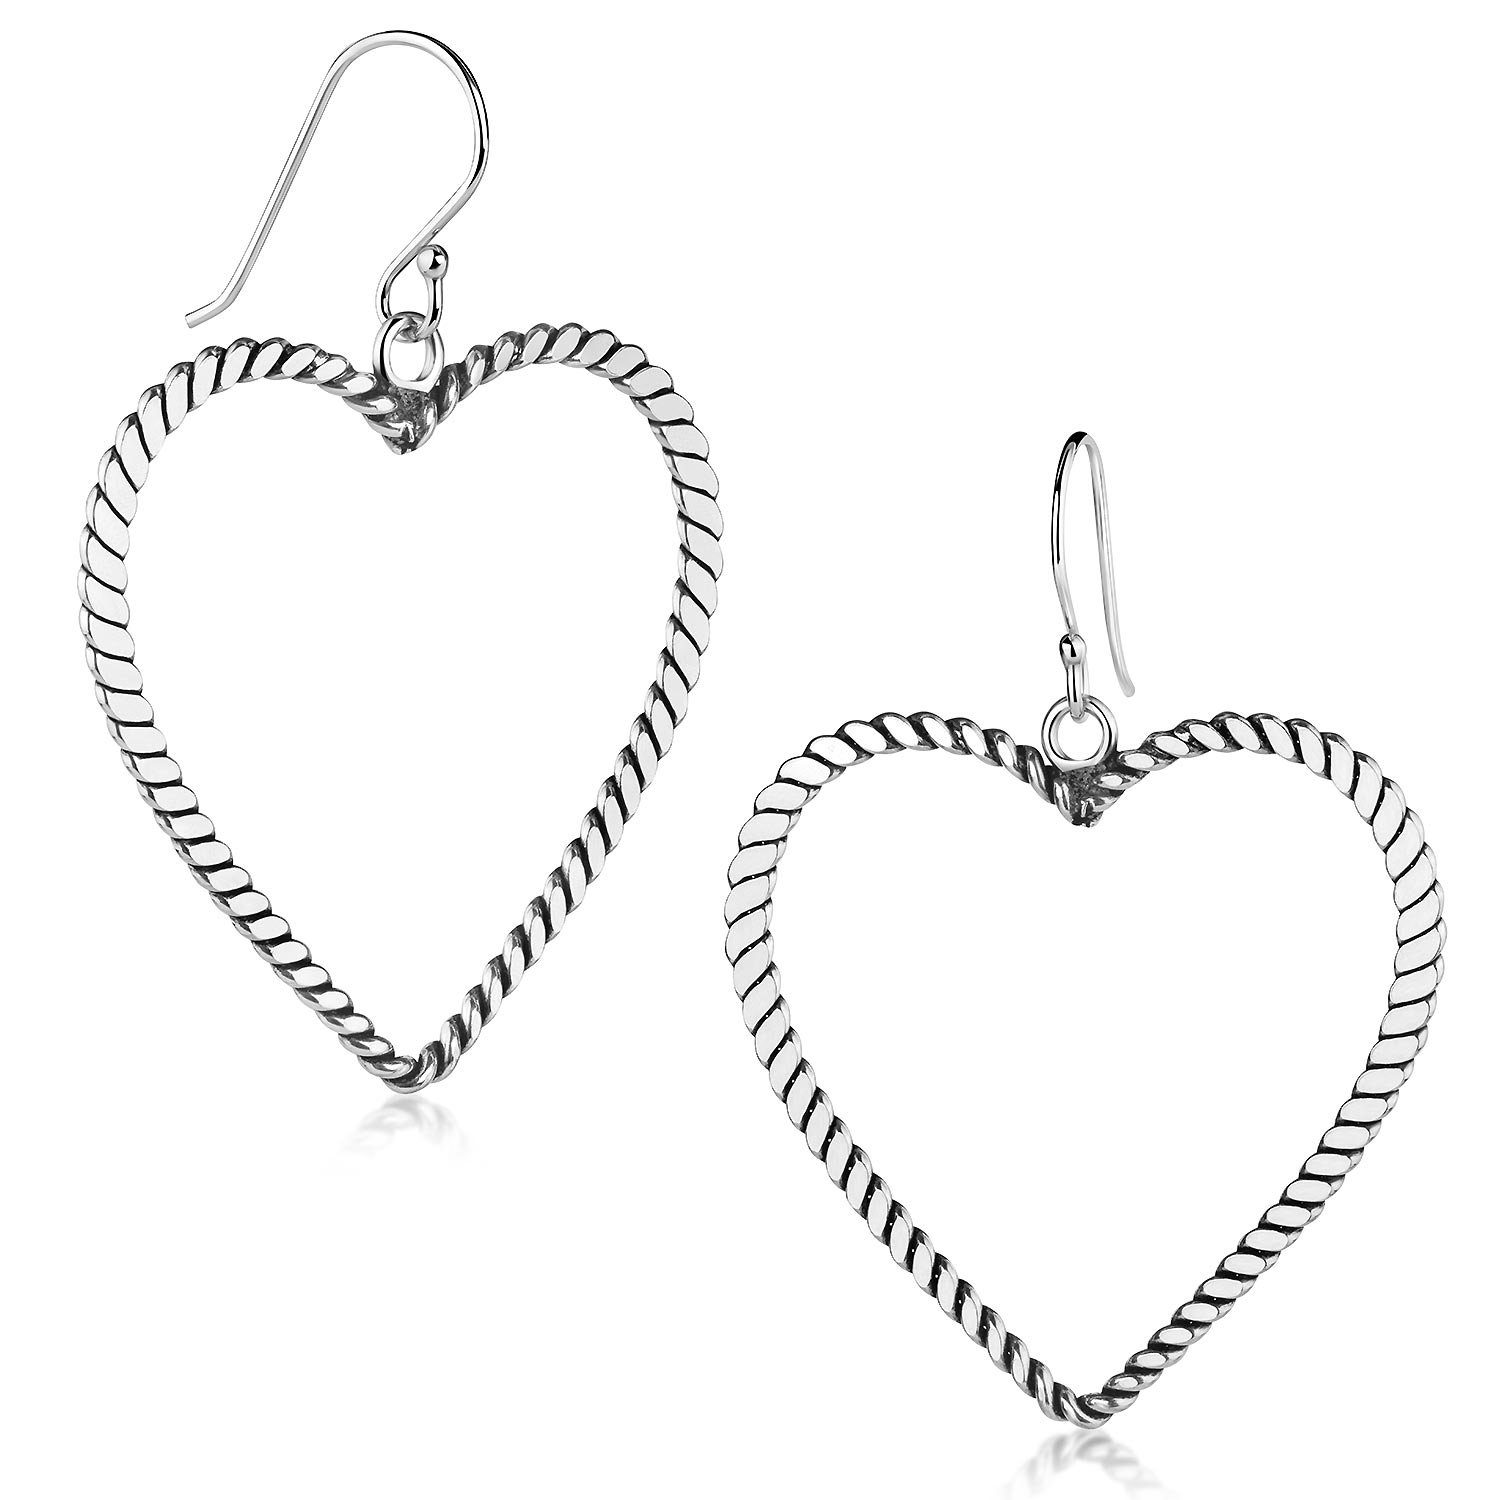 Materia Paar Ohrhänger Damen Silber Herz antik groß SO-499, 925 Sterling Silber, oxidiert